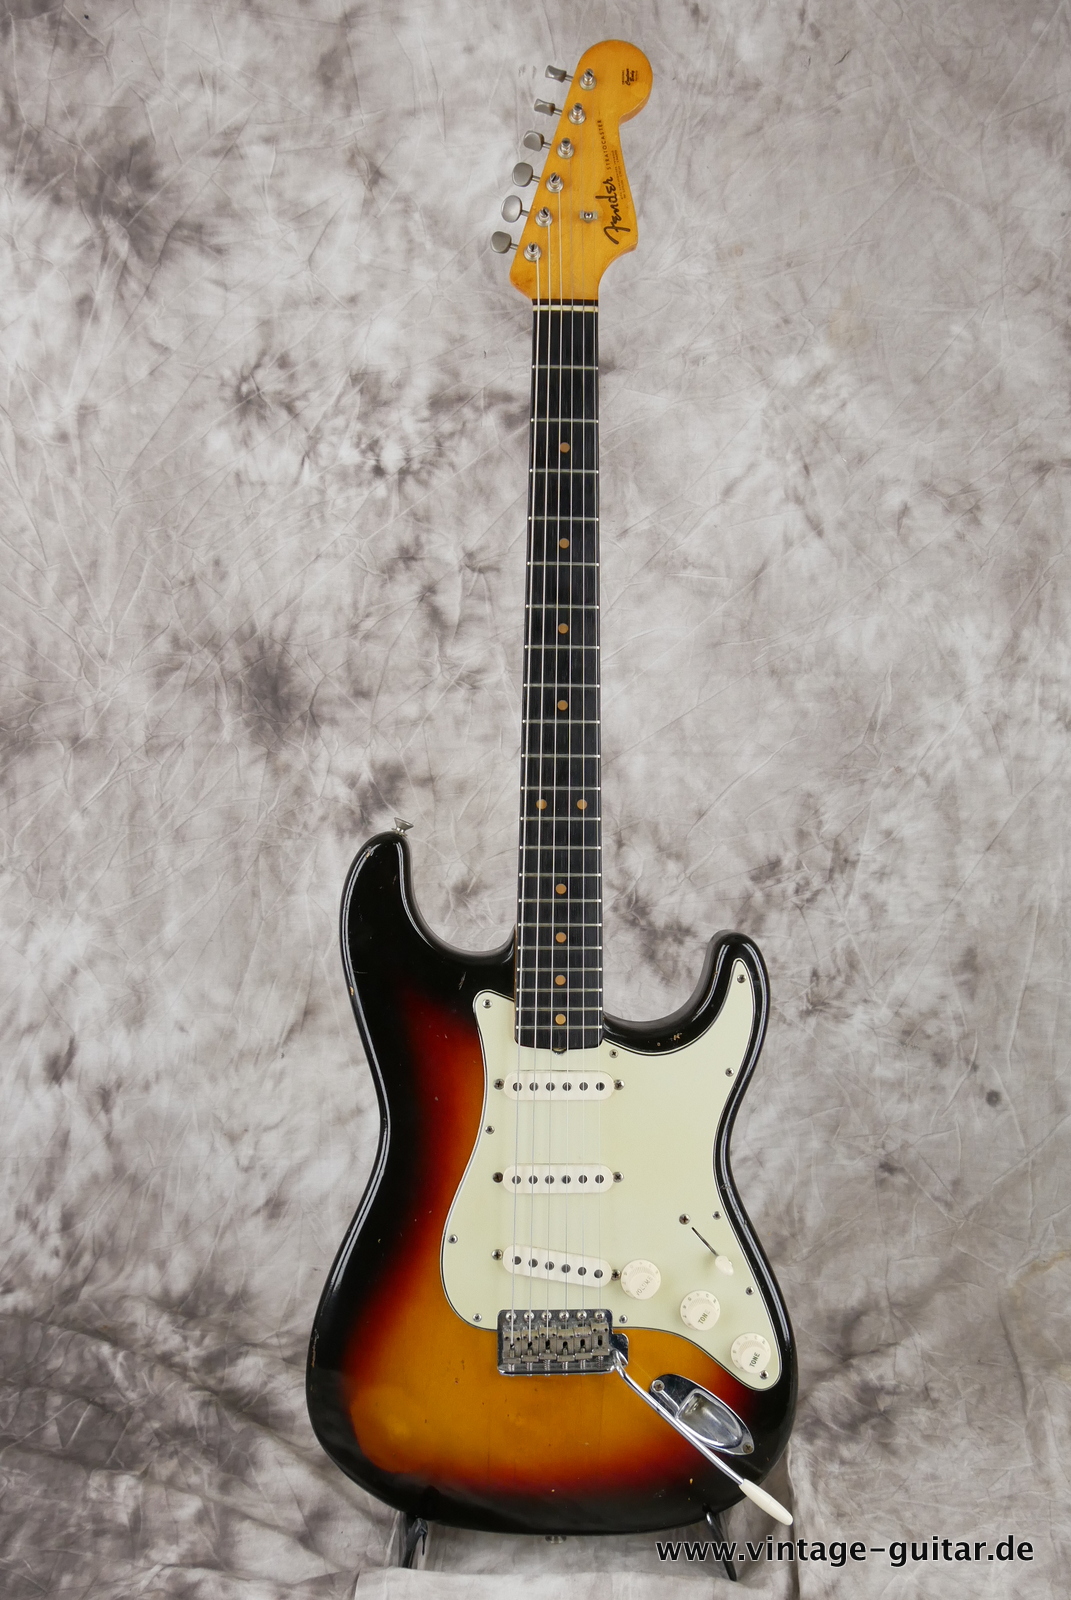 Fender_Stratocaster_sunburst_1963-001.JPG